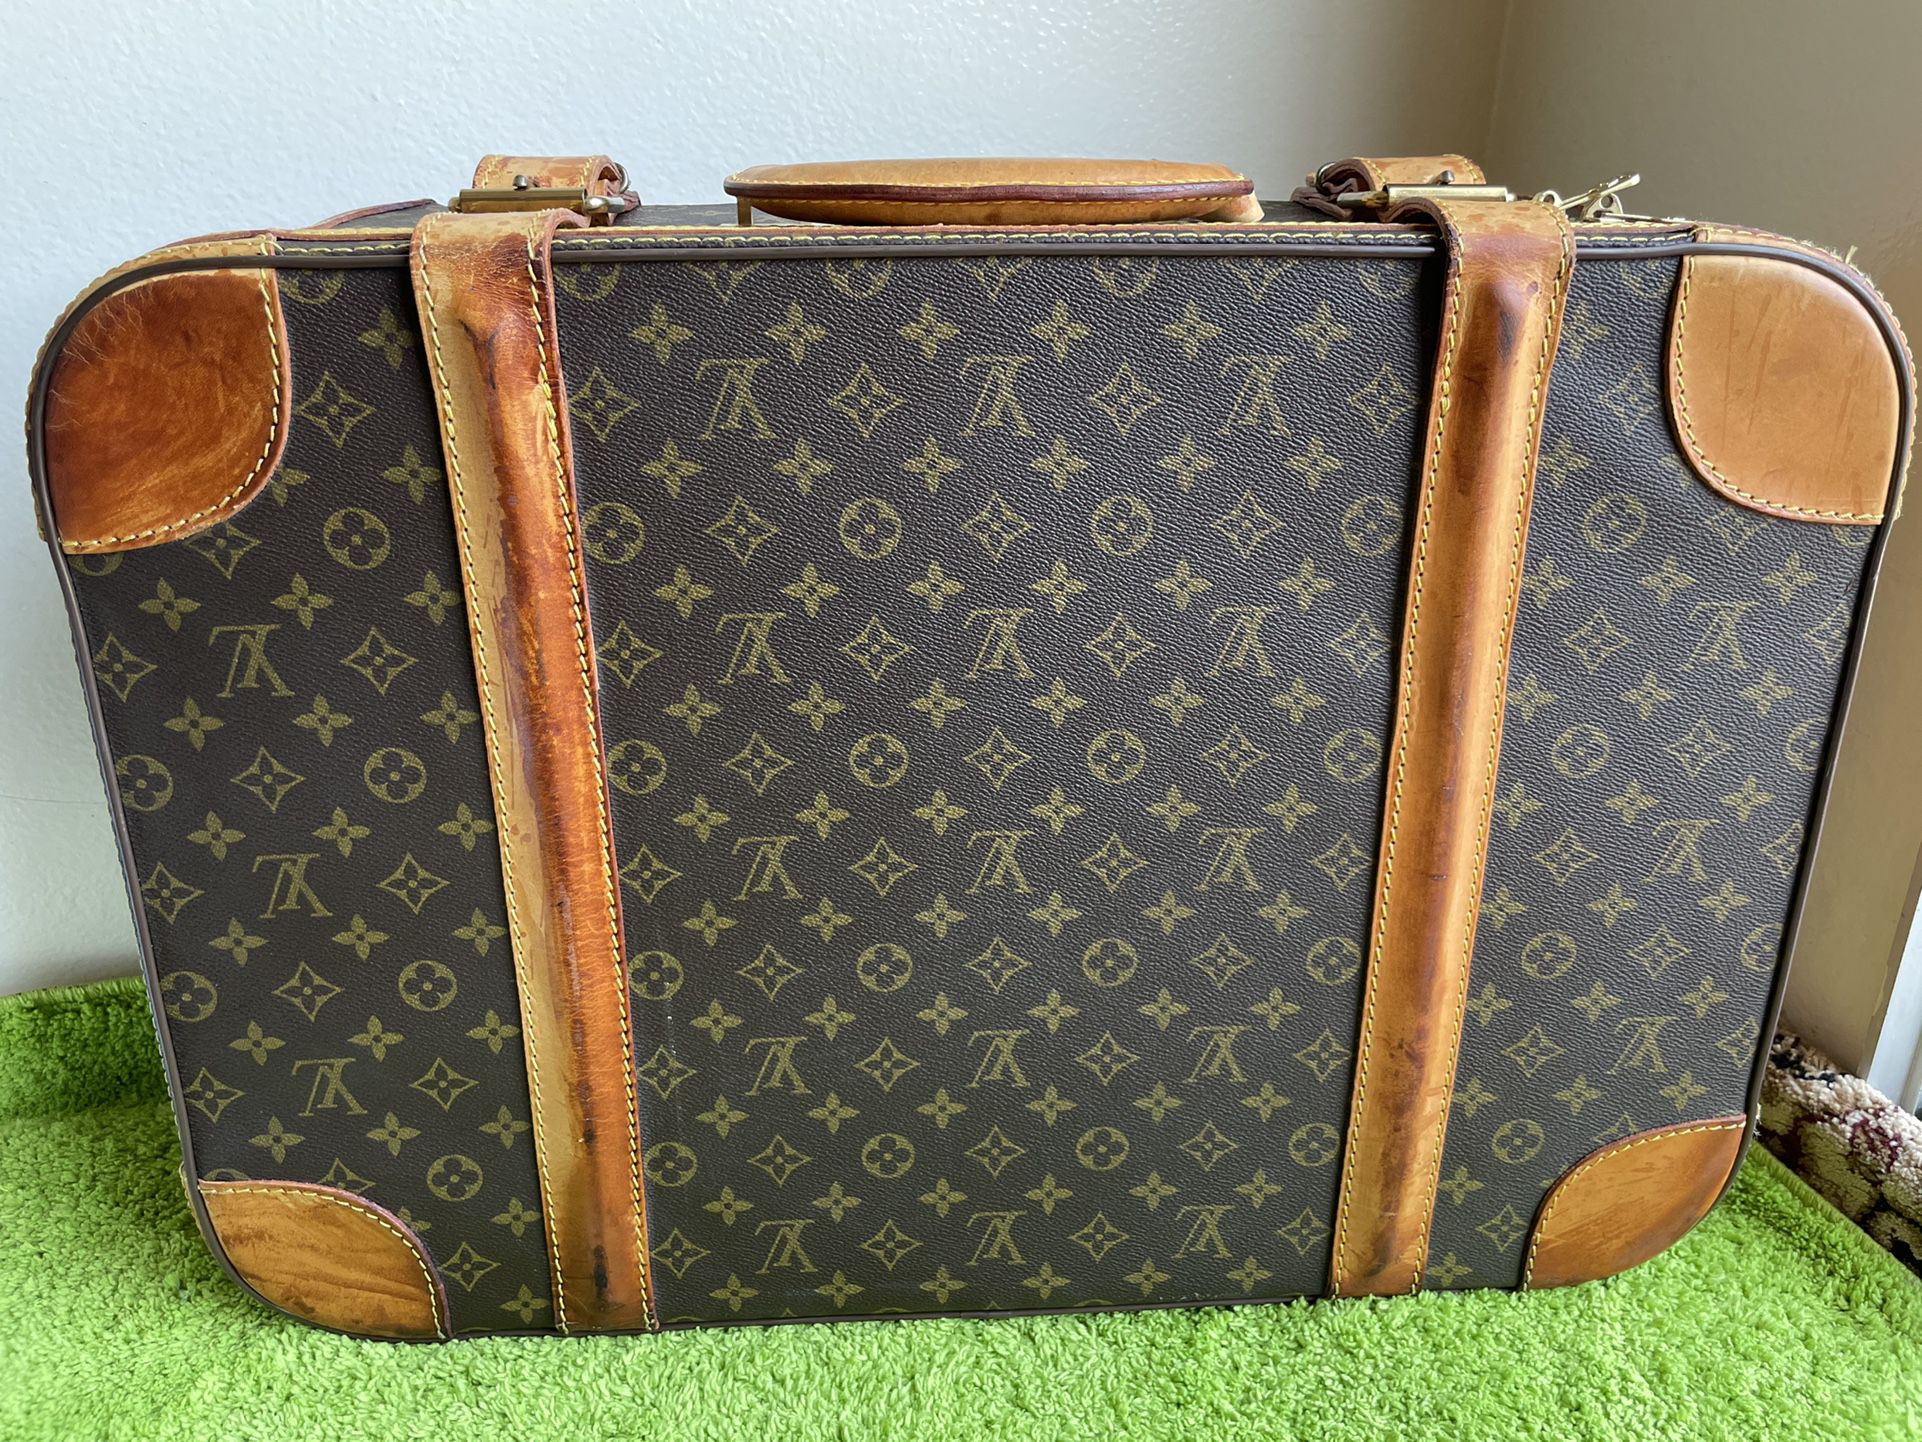 Louis Vuitton Suitcase - Zephyr 70 for Sale in Phoenix, AZ - OfferUp